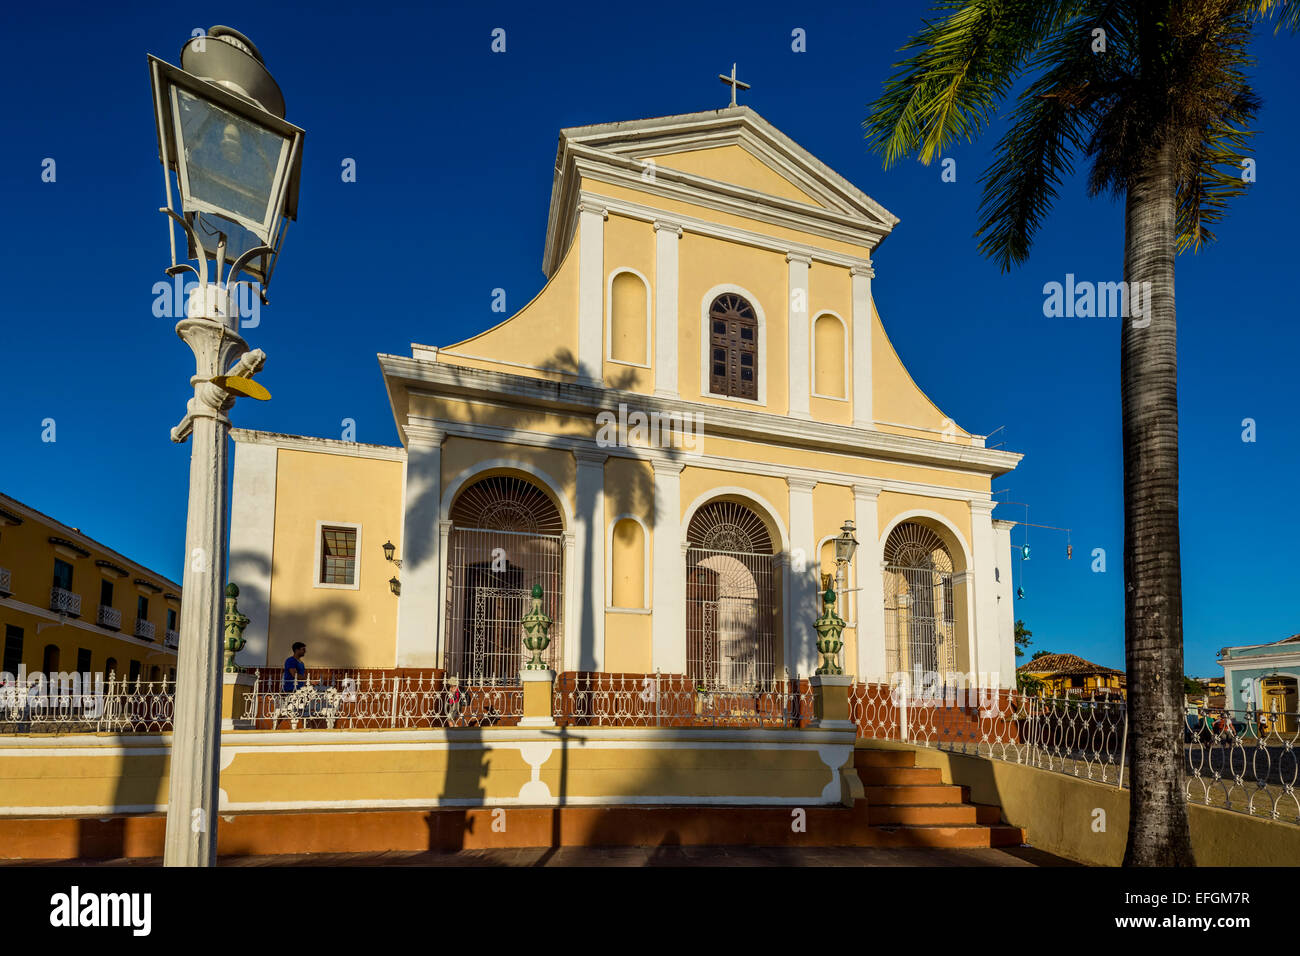 Iglesia de la Santisima Trinidad, Trinidad, Cuba église Banque D'Images